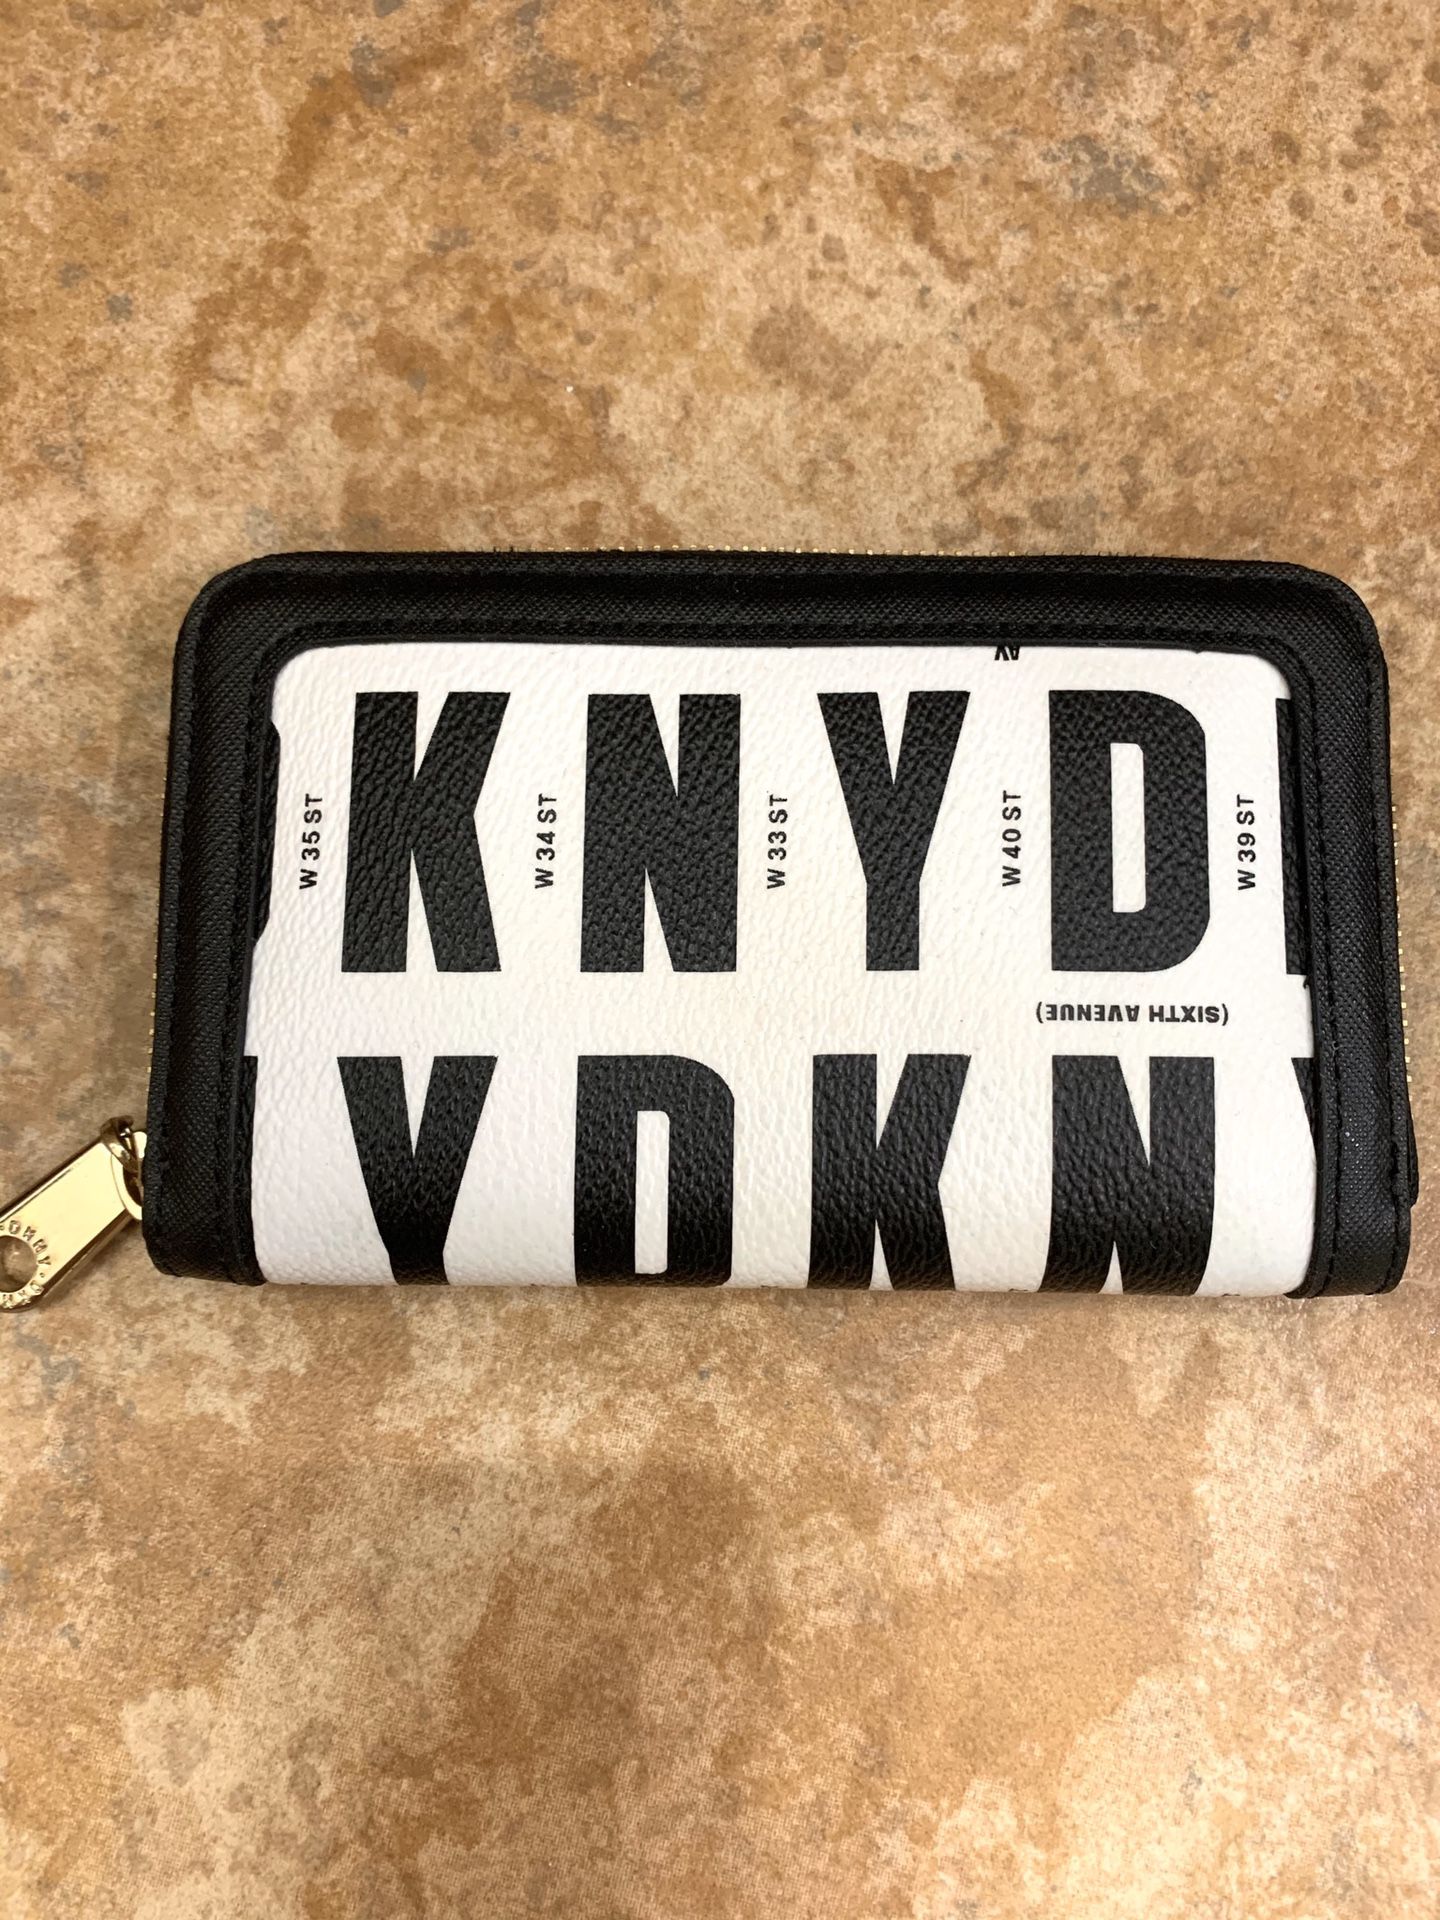 DKNY wallet